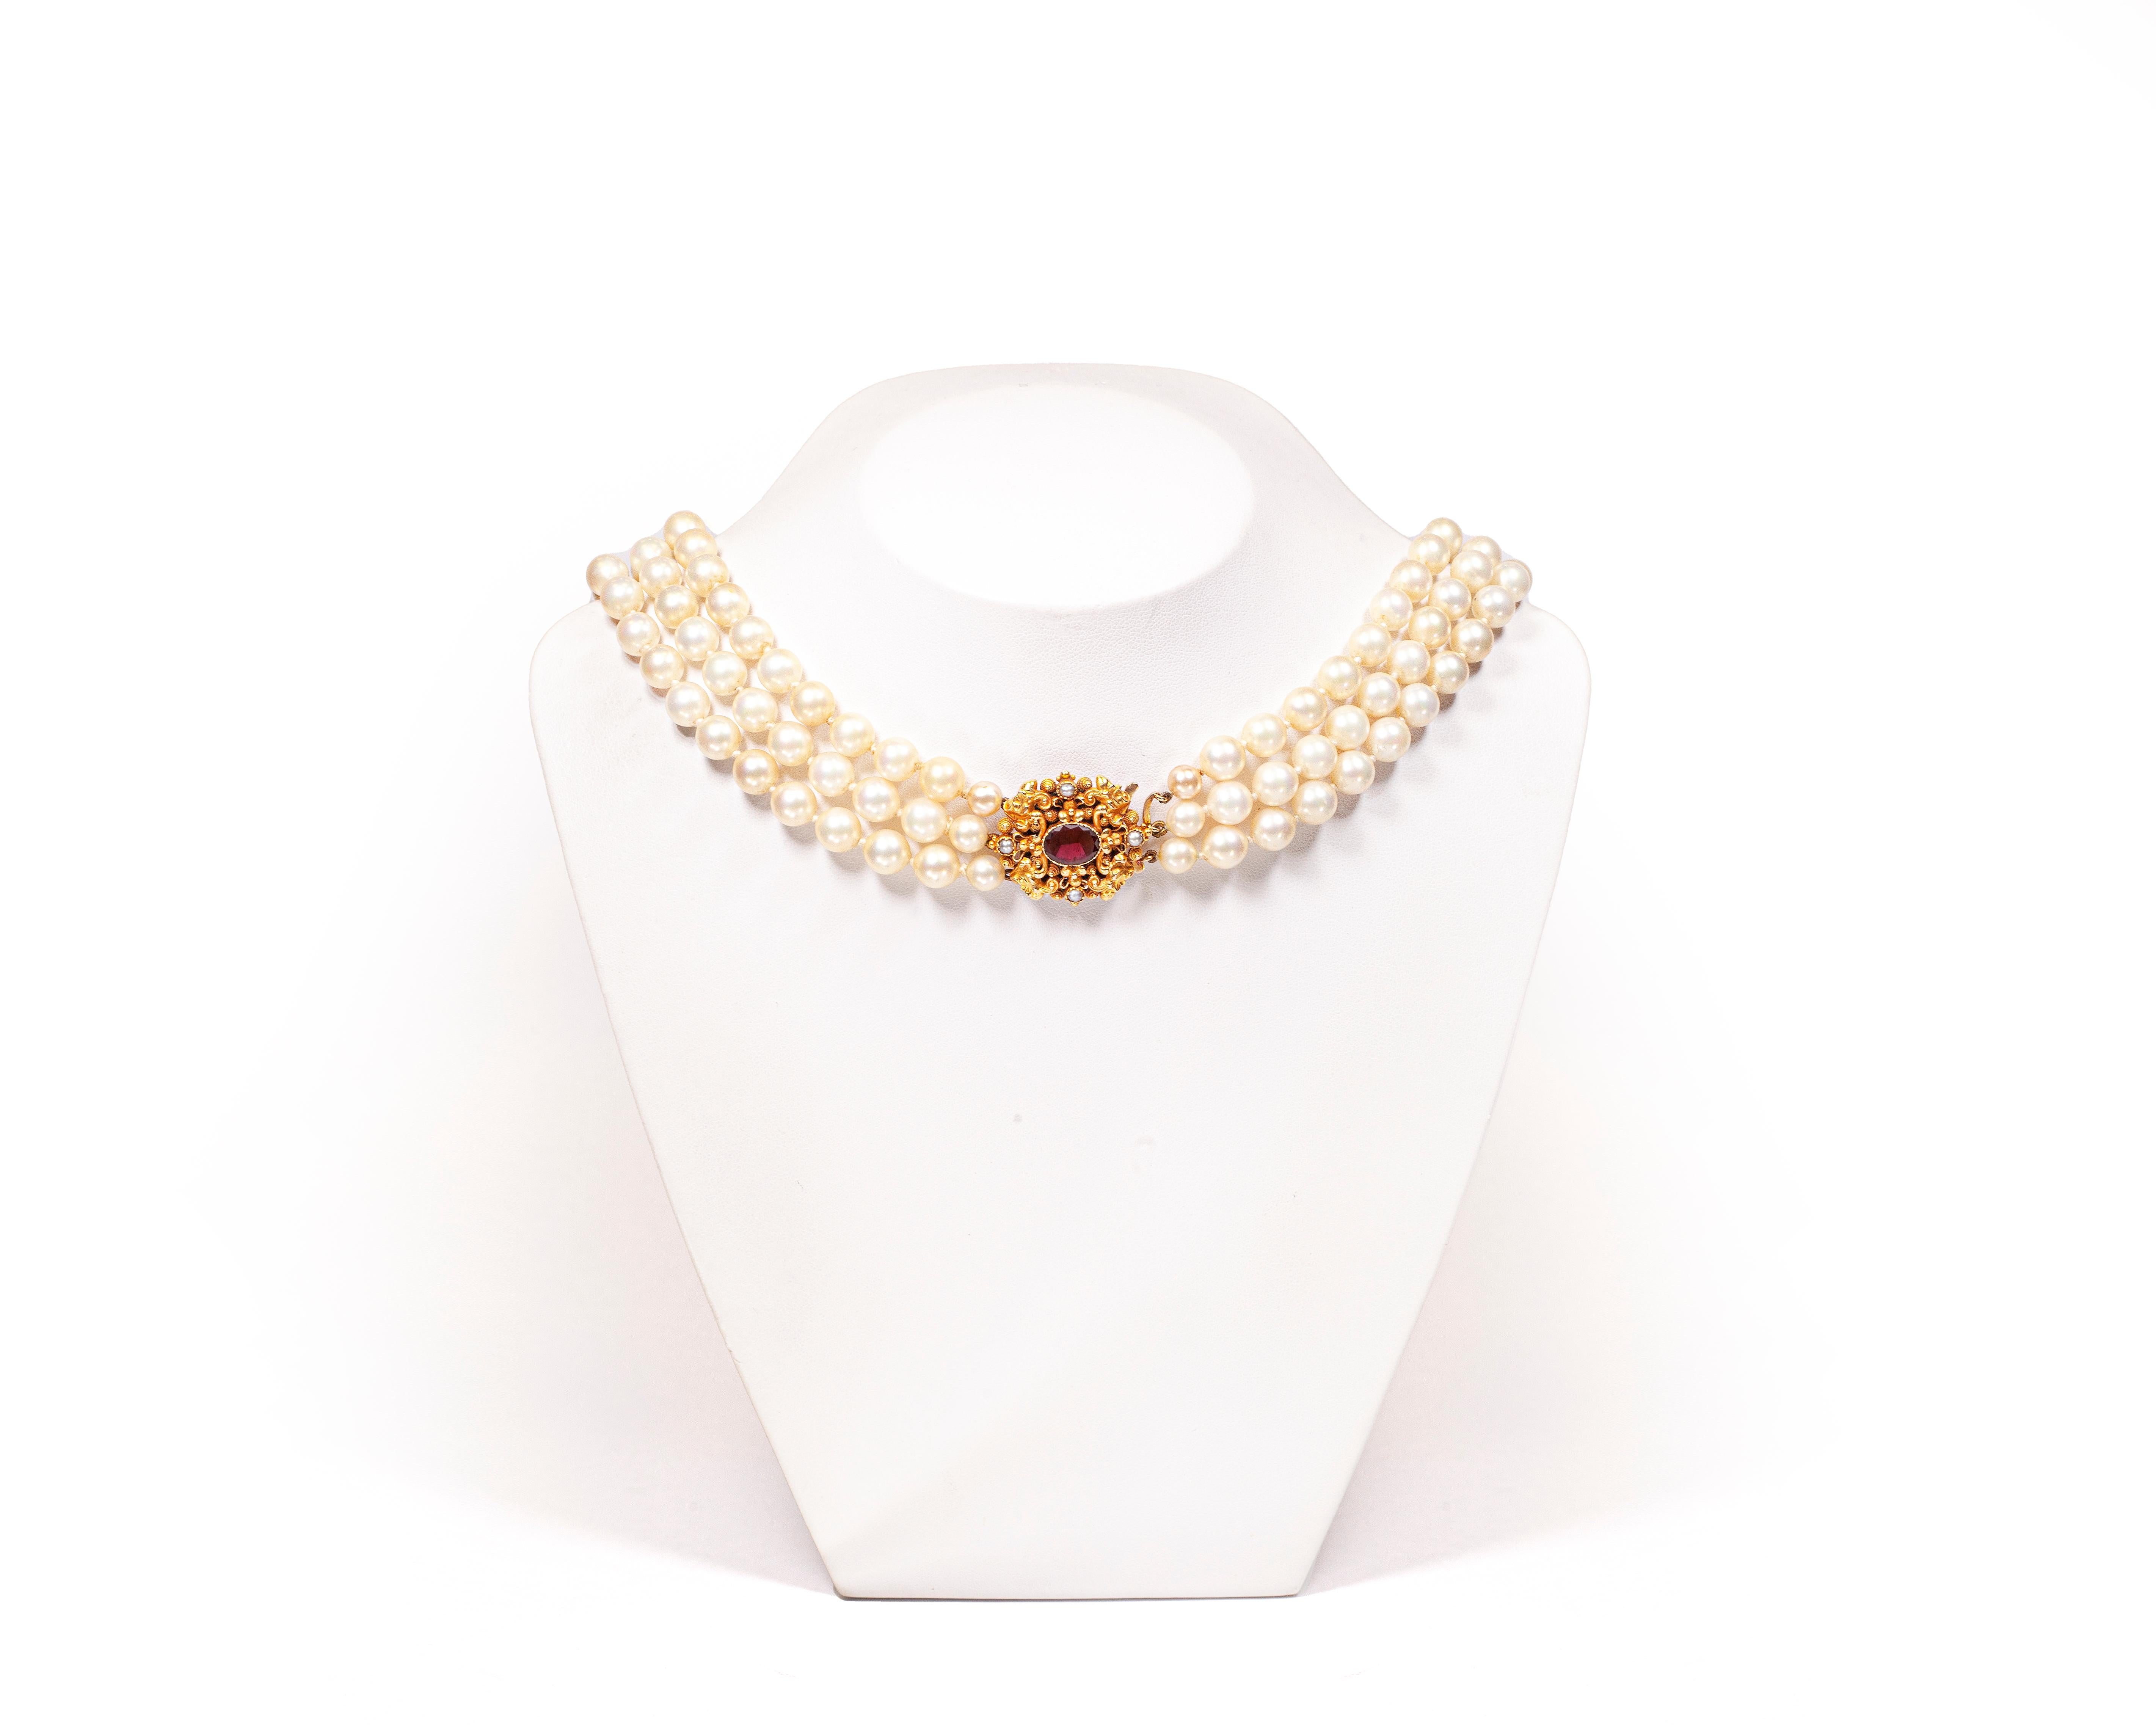 Perlen, ein Symbol für Treue und Reinheit, sind in diesem atemberaubenden Schmuckstück gekonnt mit dem reichen und königlichen Farbton von 18 Karat Gelbgold verwoben.

Diese bezaubernde Perlenkette besteht aus 3 Strängen einzeln geknoteter